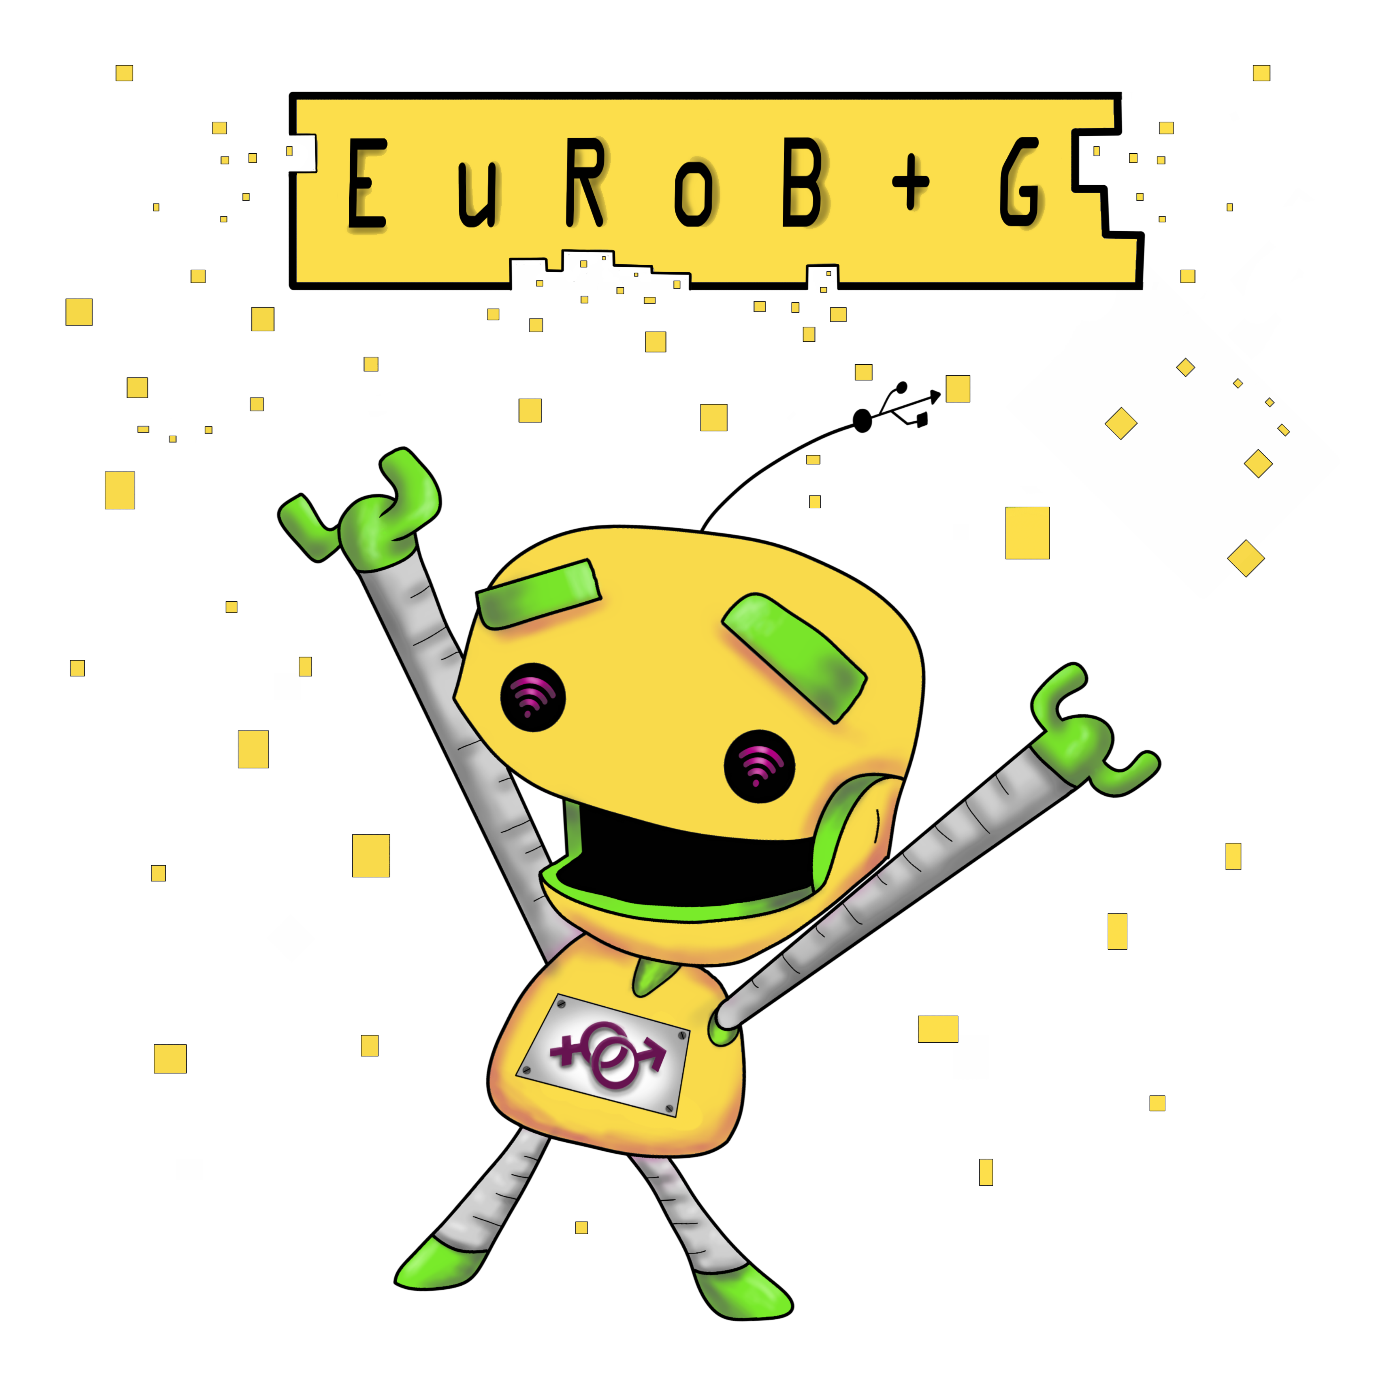 eurobg-robot